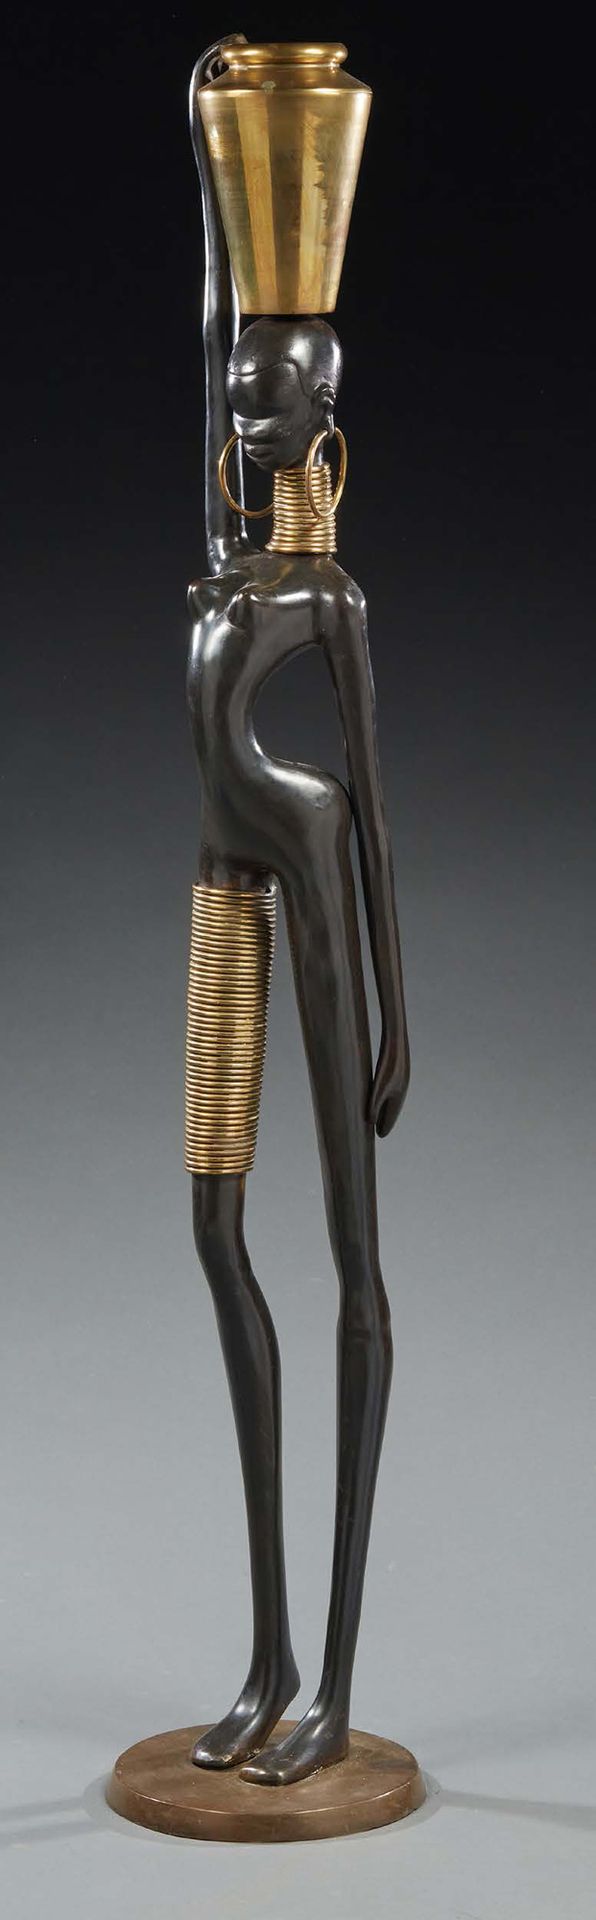 TRAVAIL 1970 Bronzeskulptur, die eine afrikanische Frau darstellt
H. : 166 cm